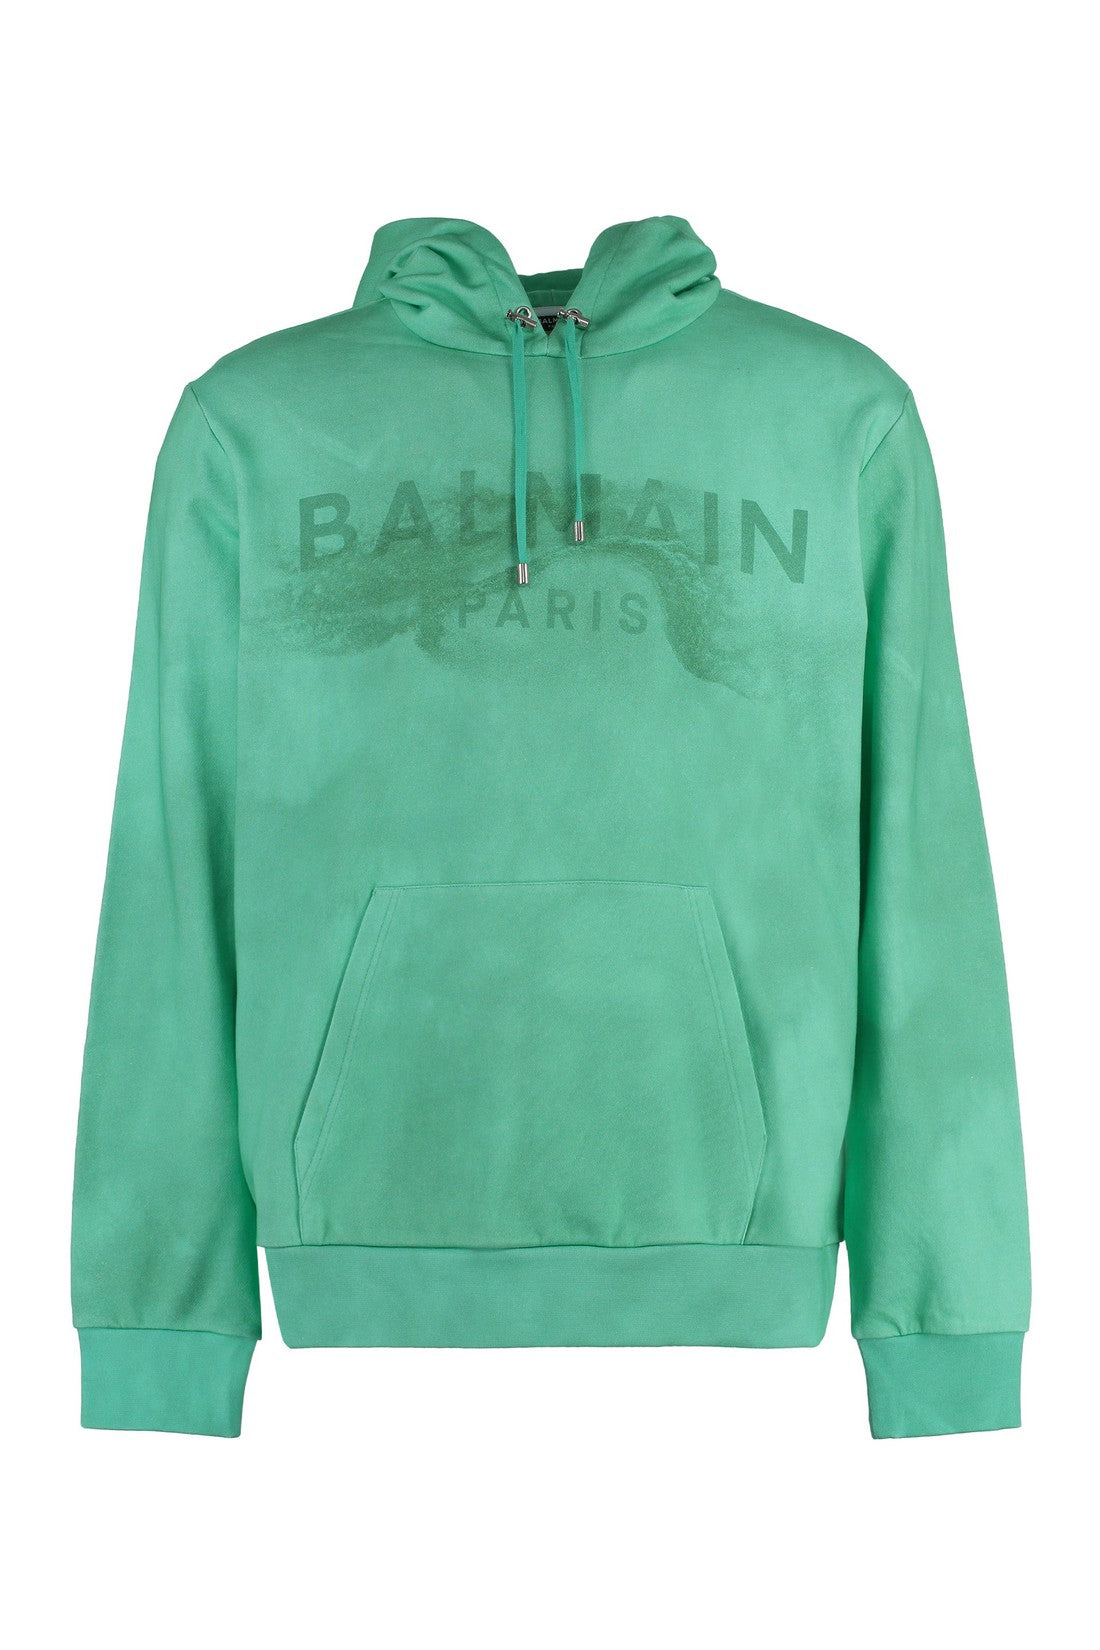 Balmain-OUTLET-SALE-Cotton hoodie-ARCHIVIST